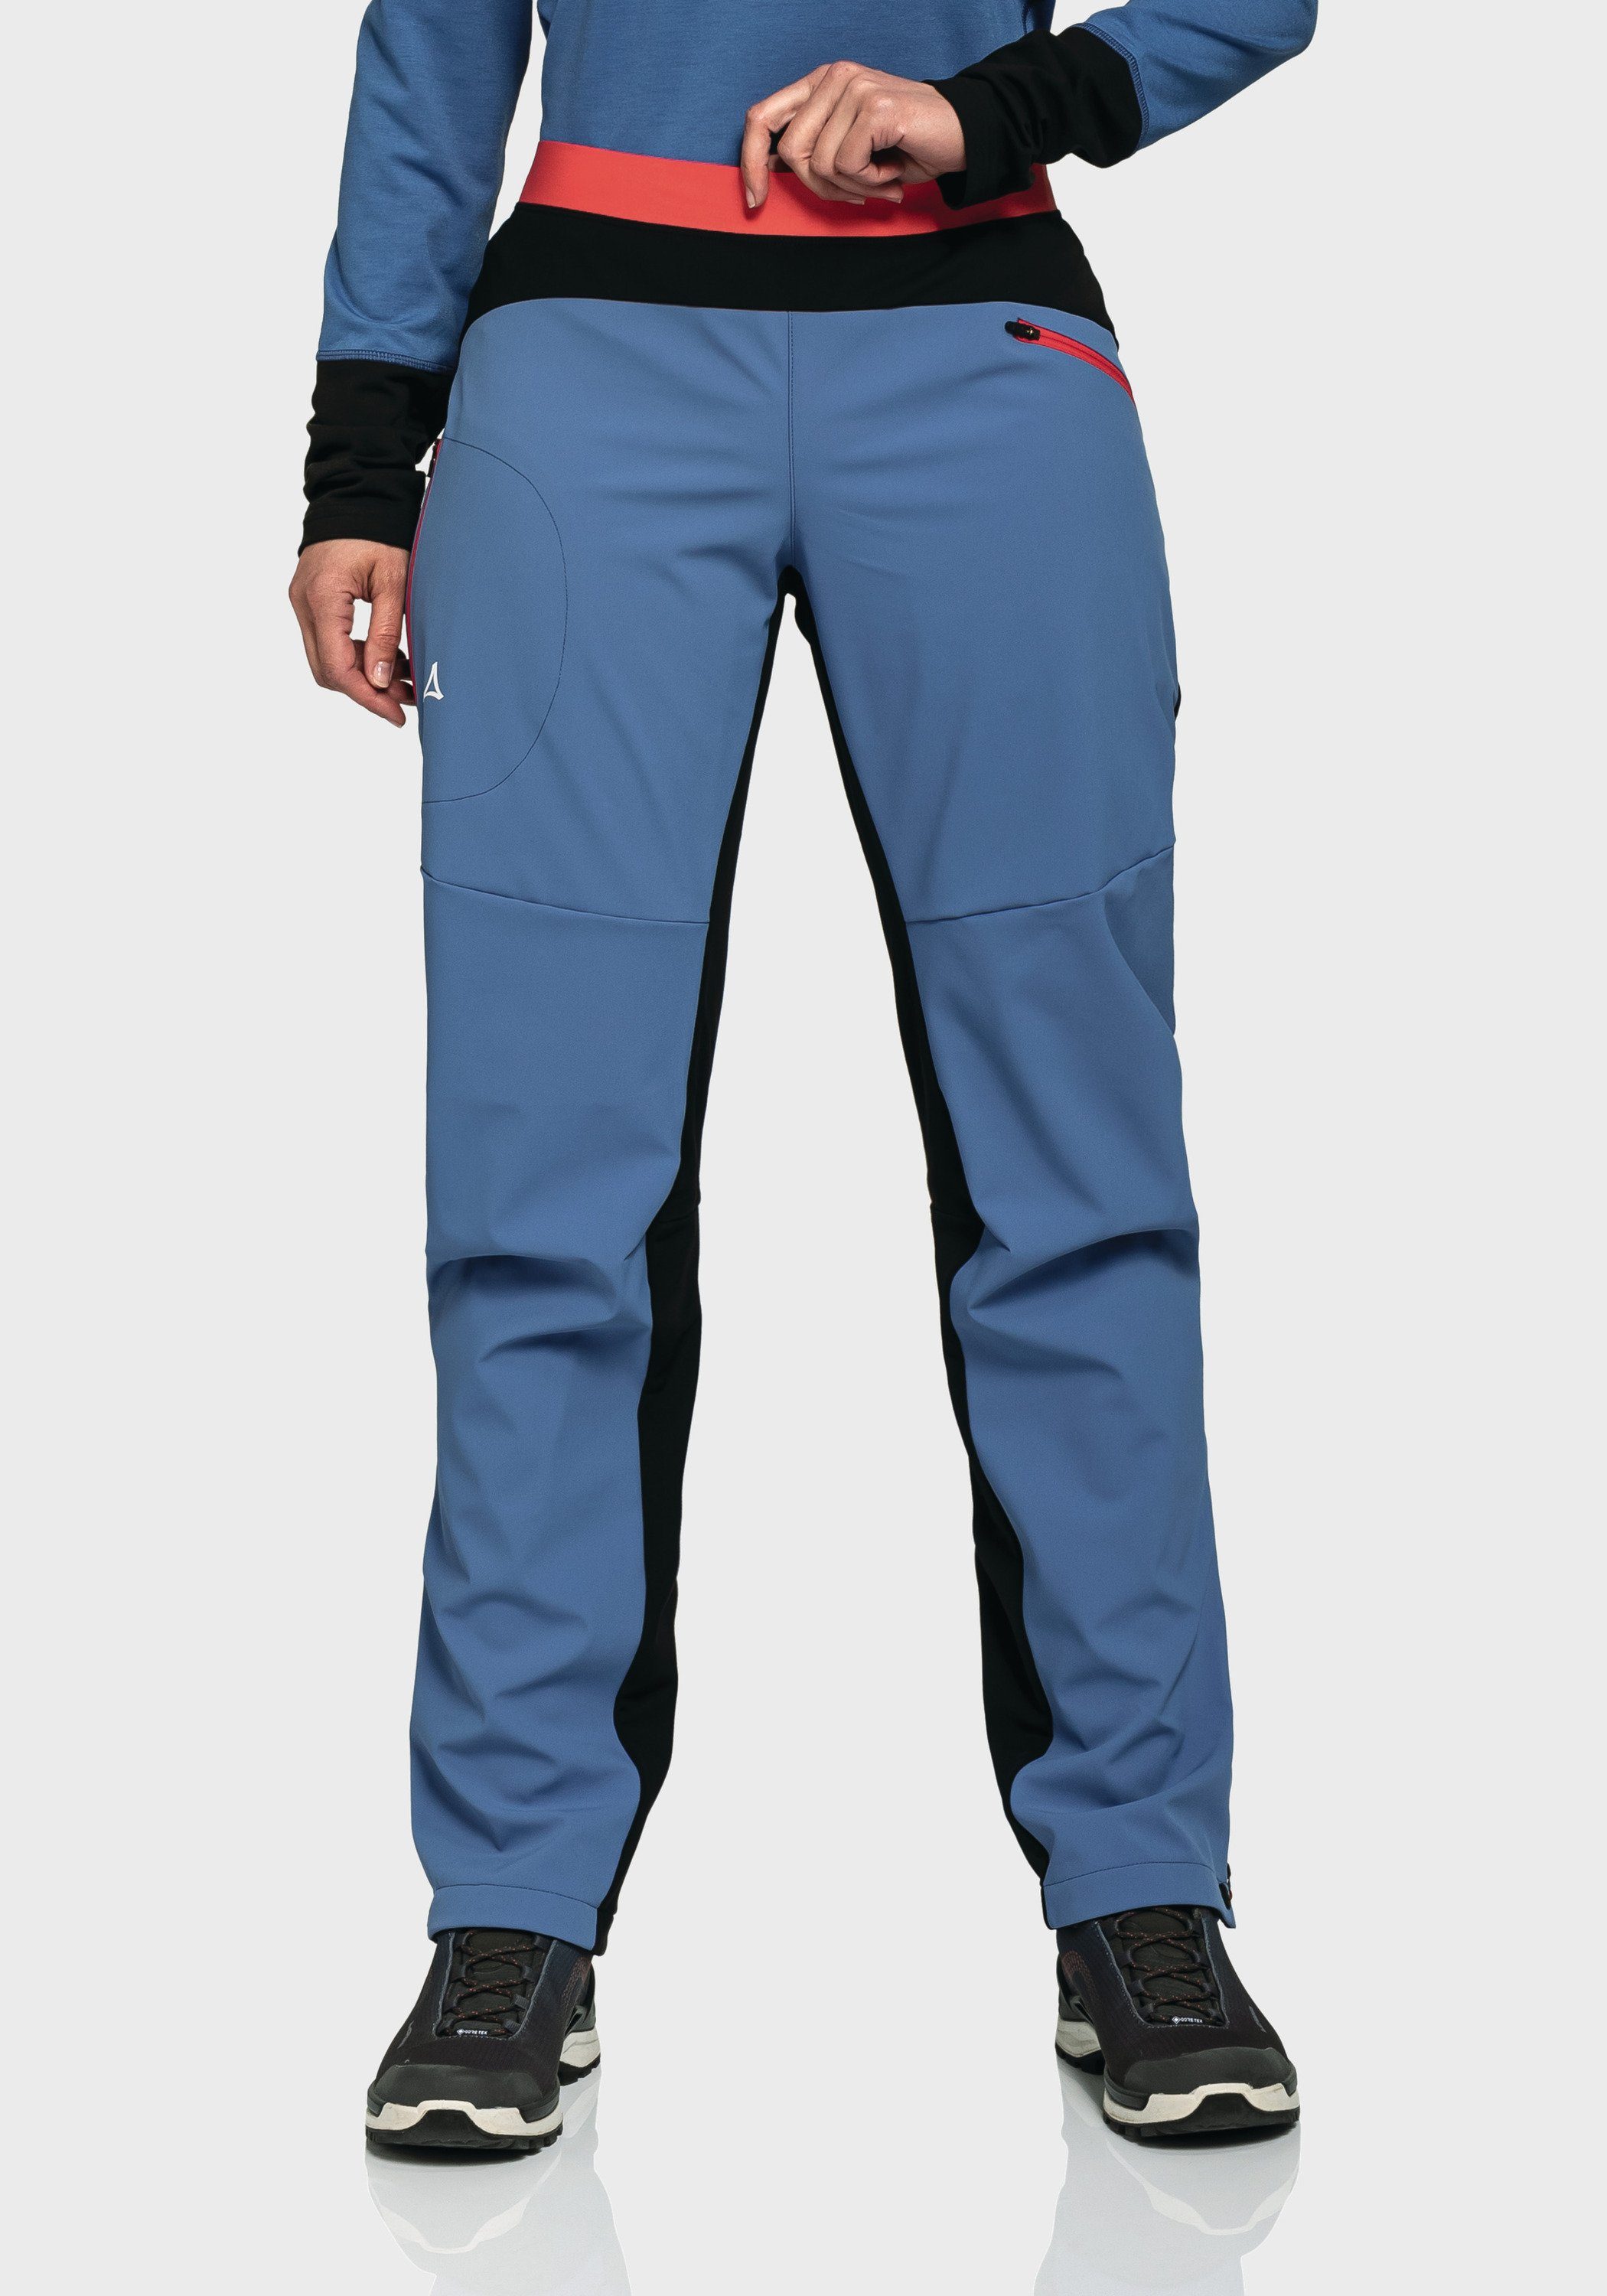 Rinnen Schöffel Pants blau Softshell Outdoorhose L